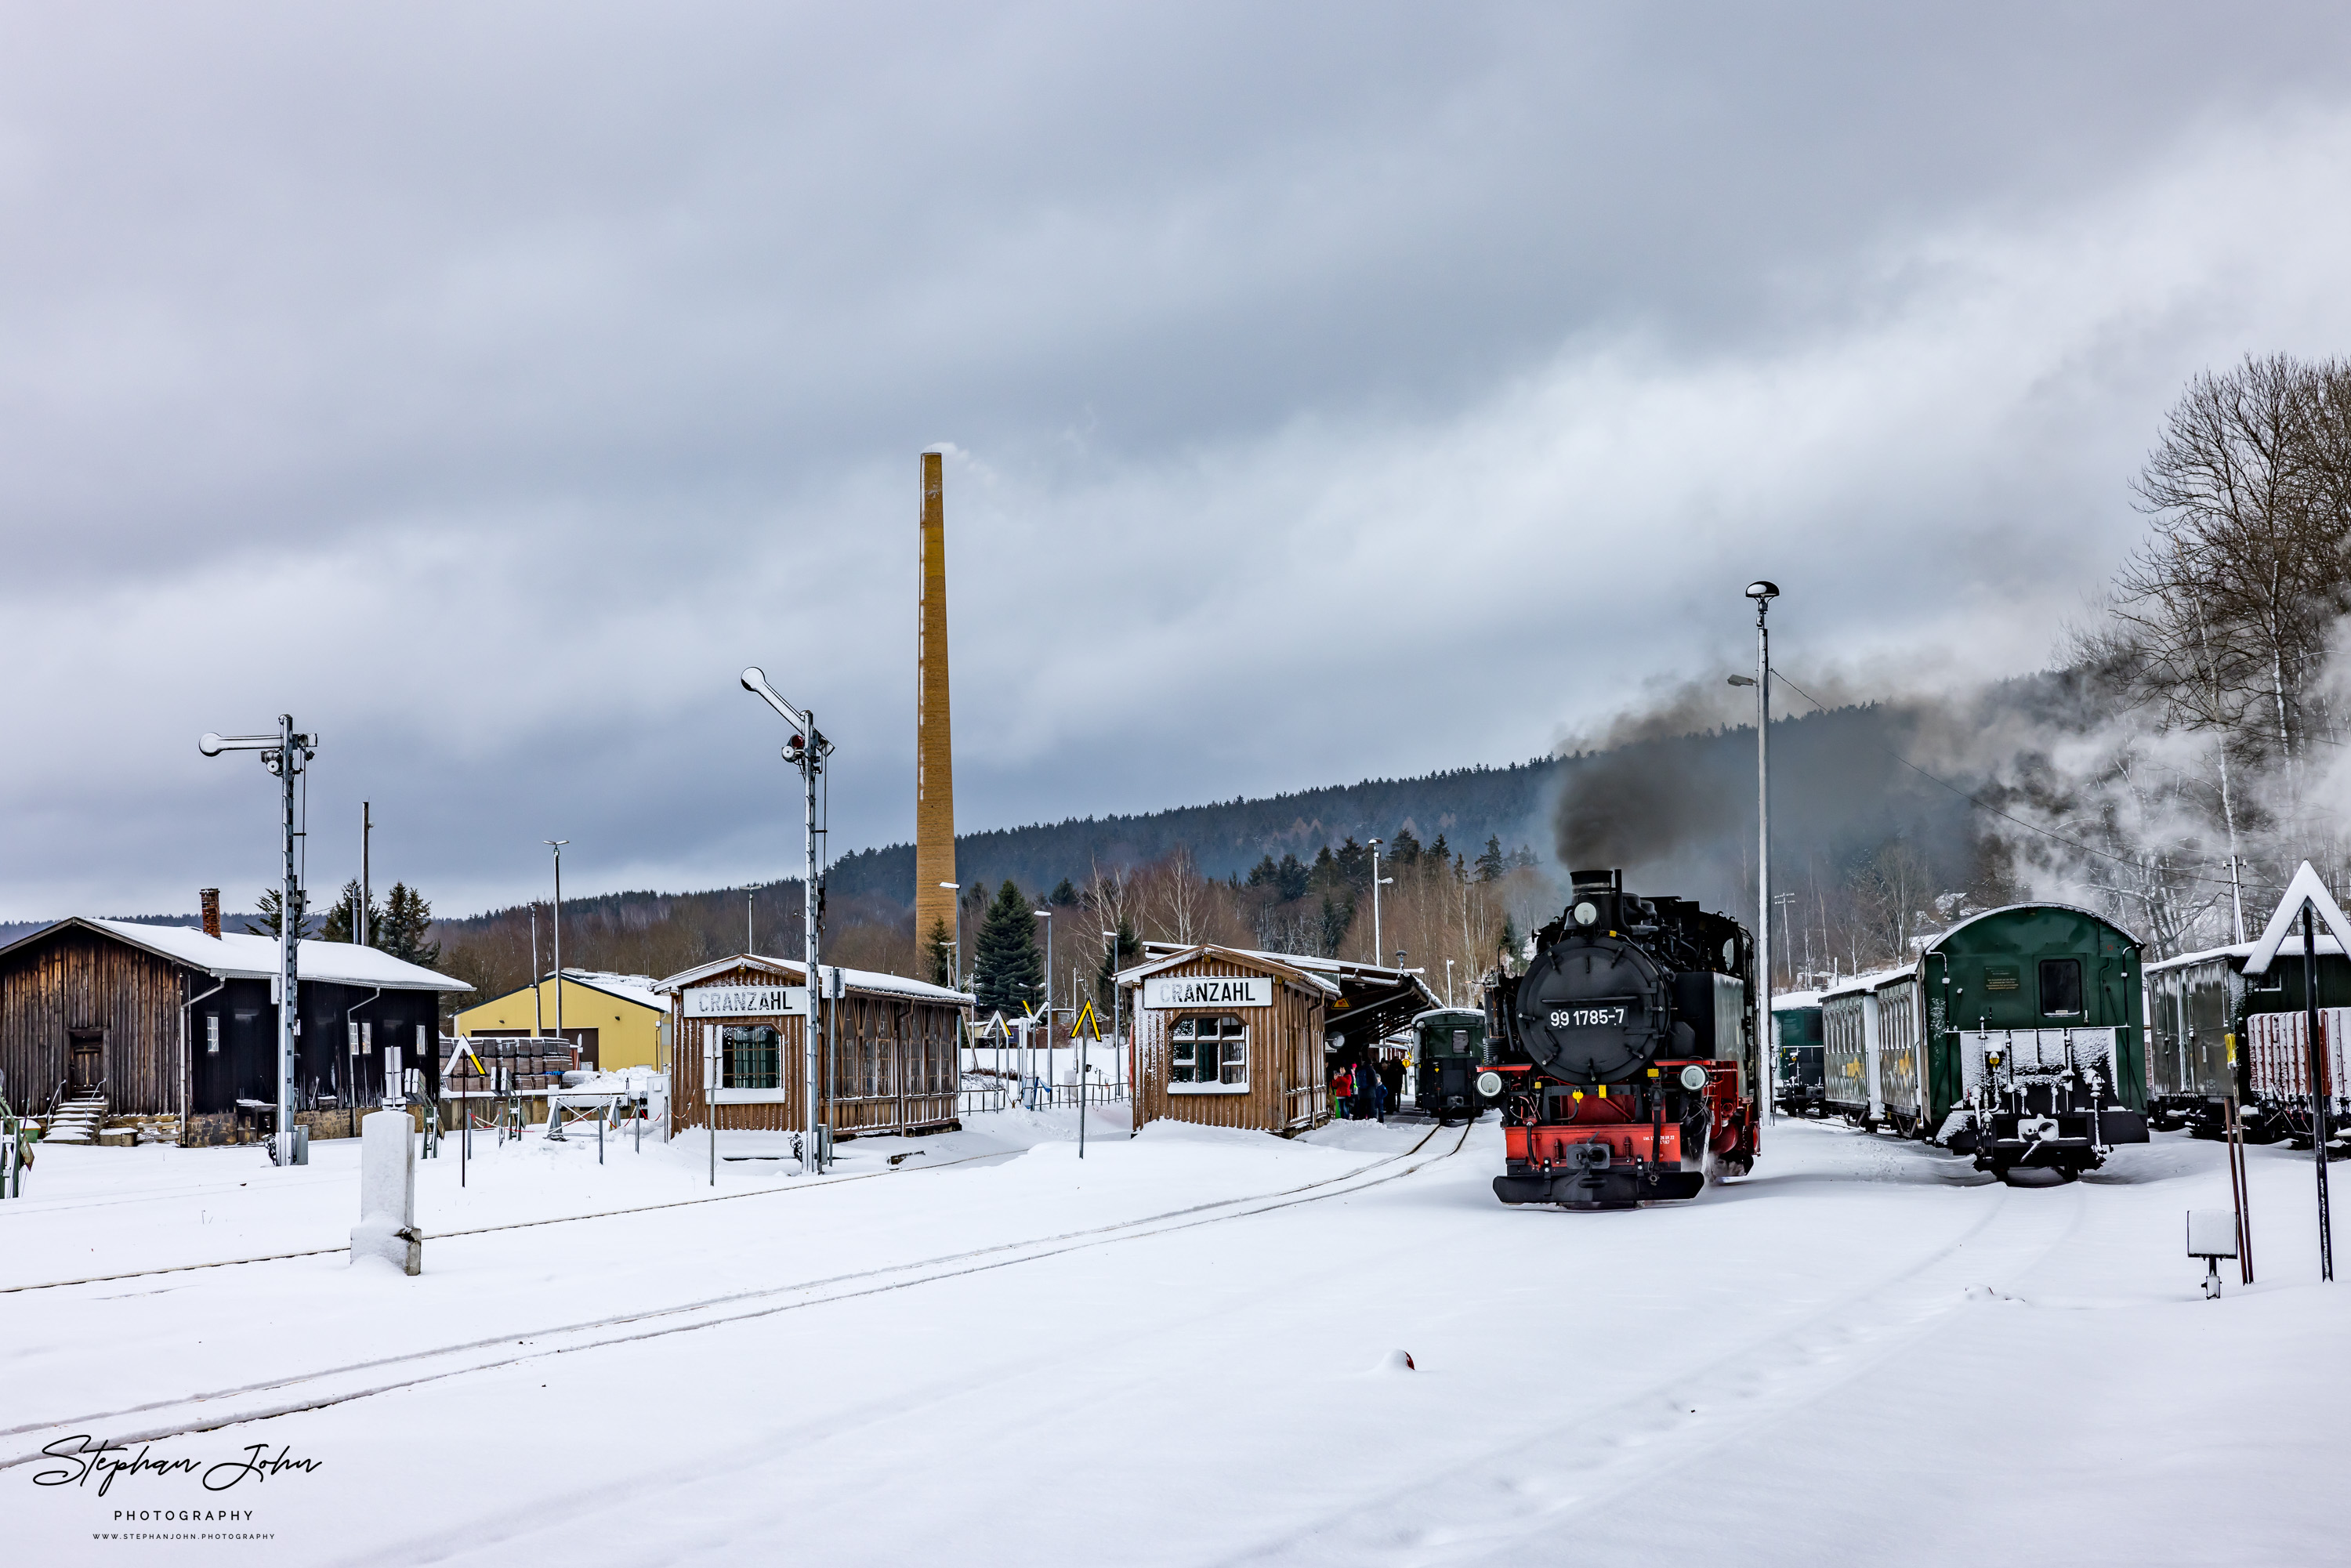 Beim Umfahren fungiert Lok 99 1785-7 als Spurlok, da das Umfahrungsgleis noch mit Schnee bedeckt ist.